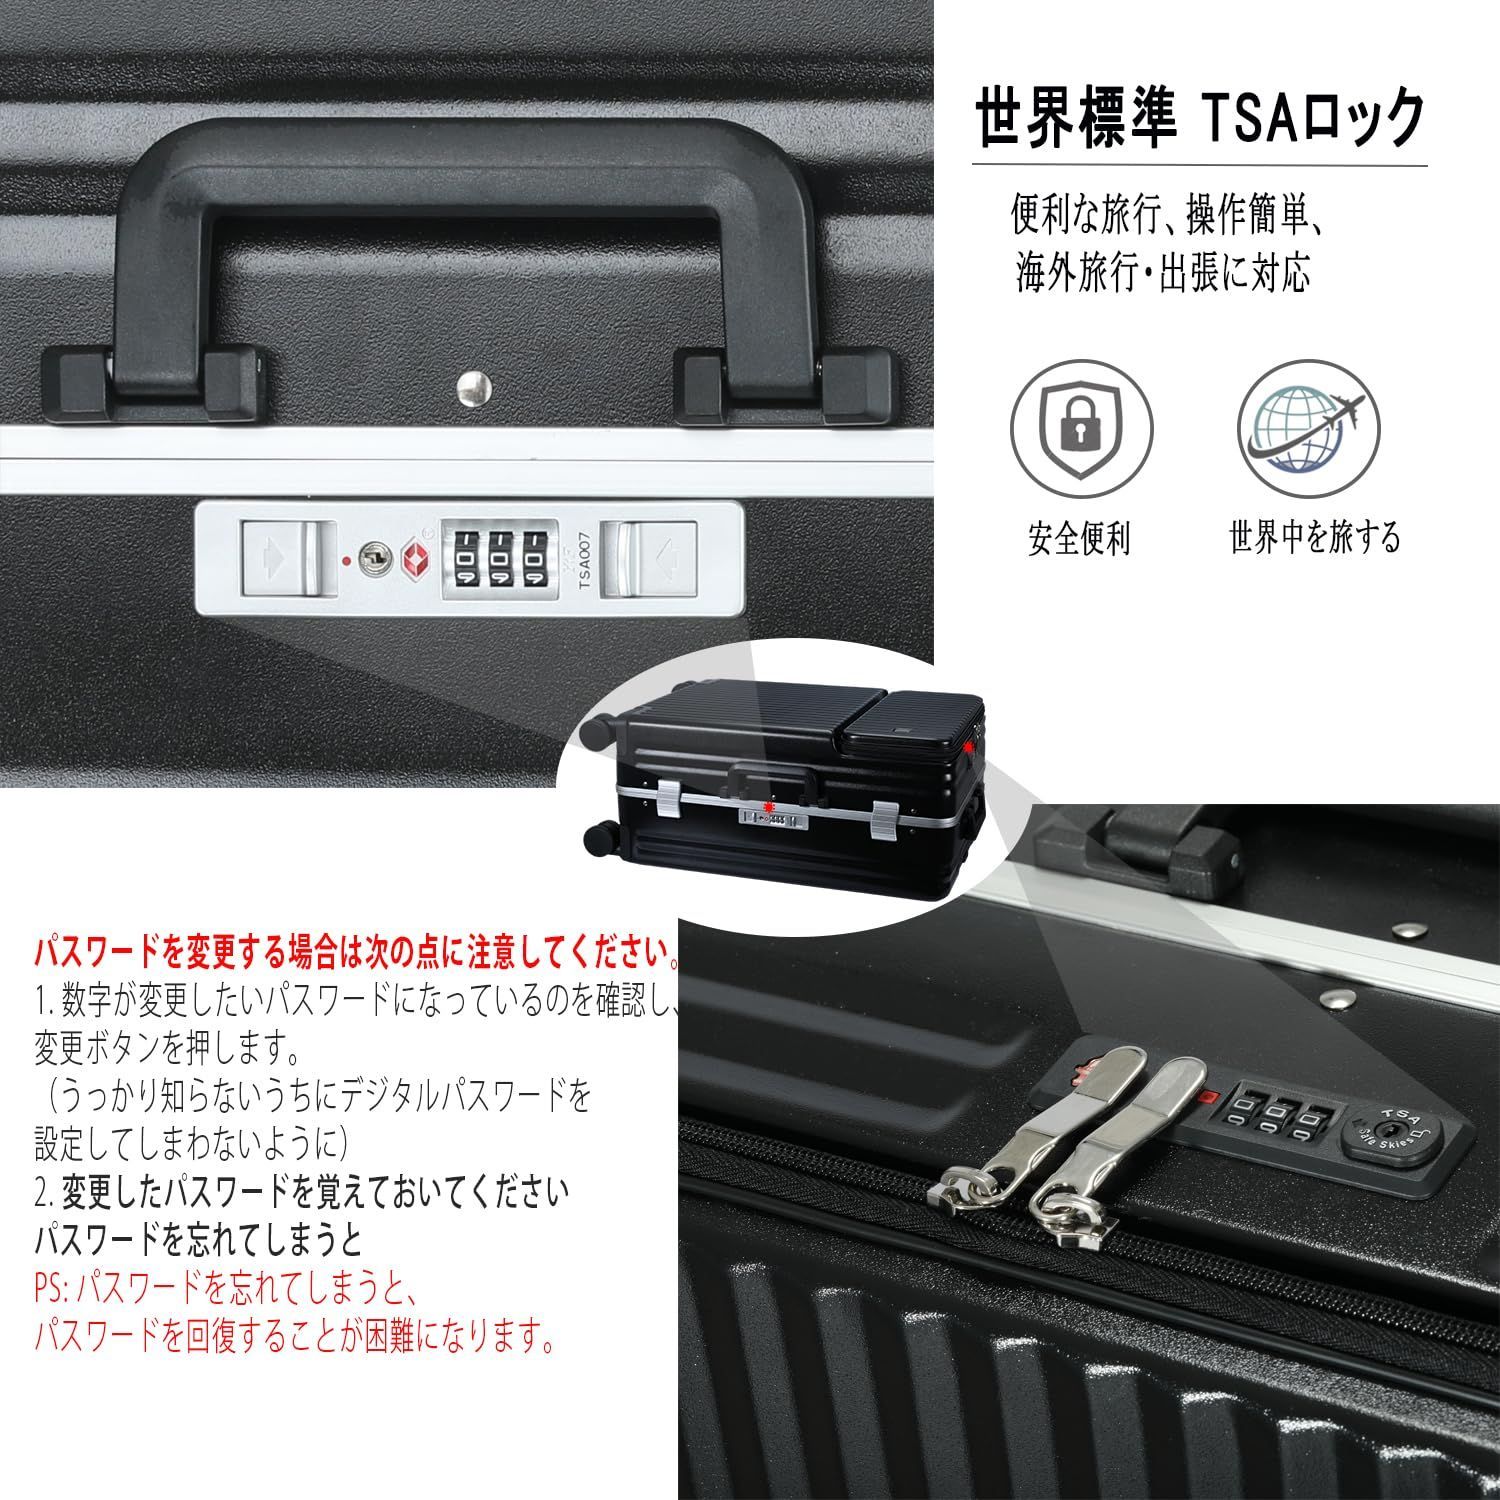 Ashard] スーツケース アルミフレーム ピュアPC材質 大容量 - バッグ